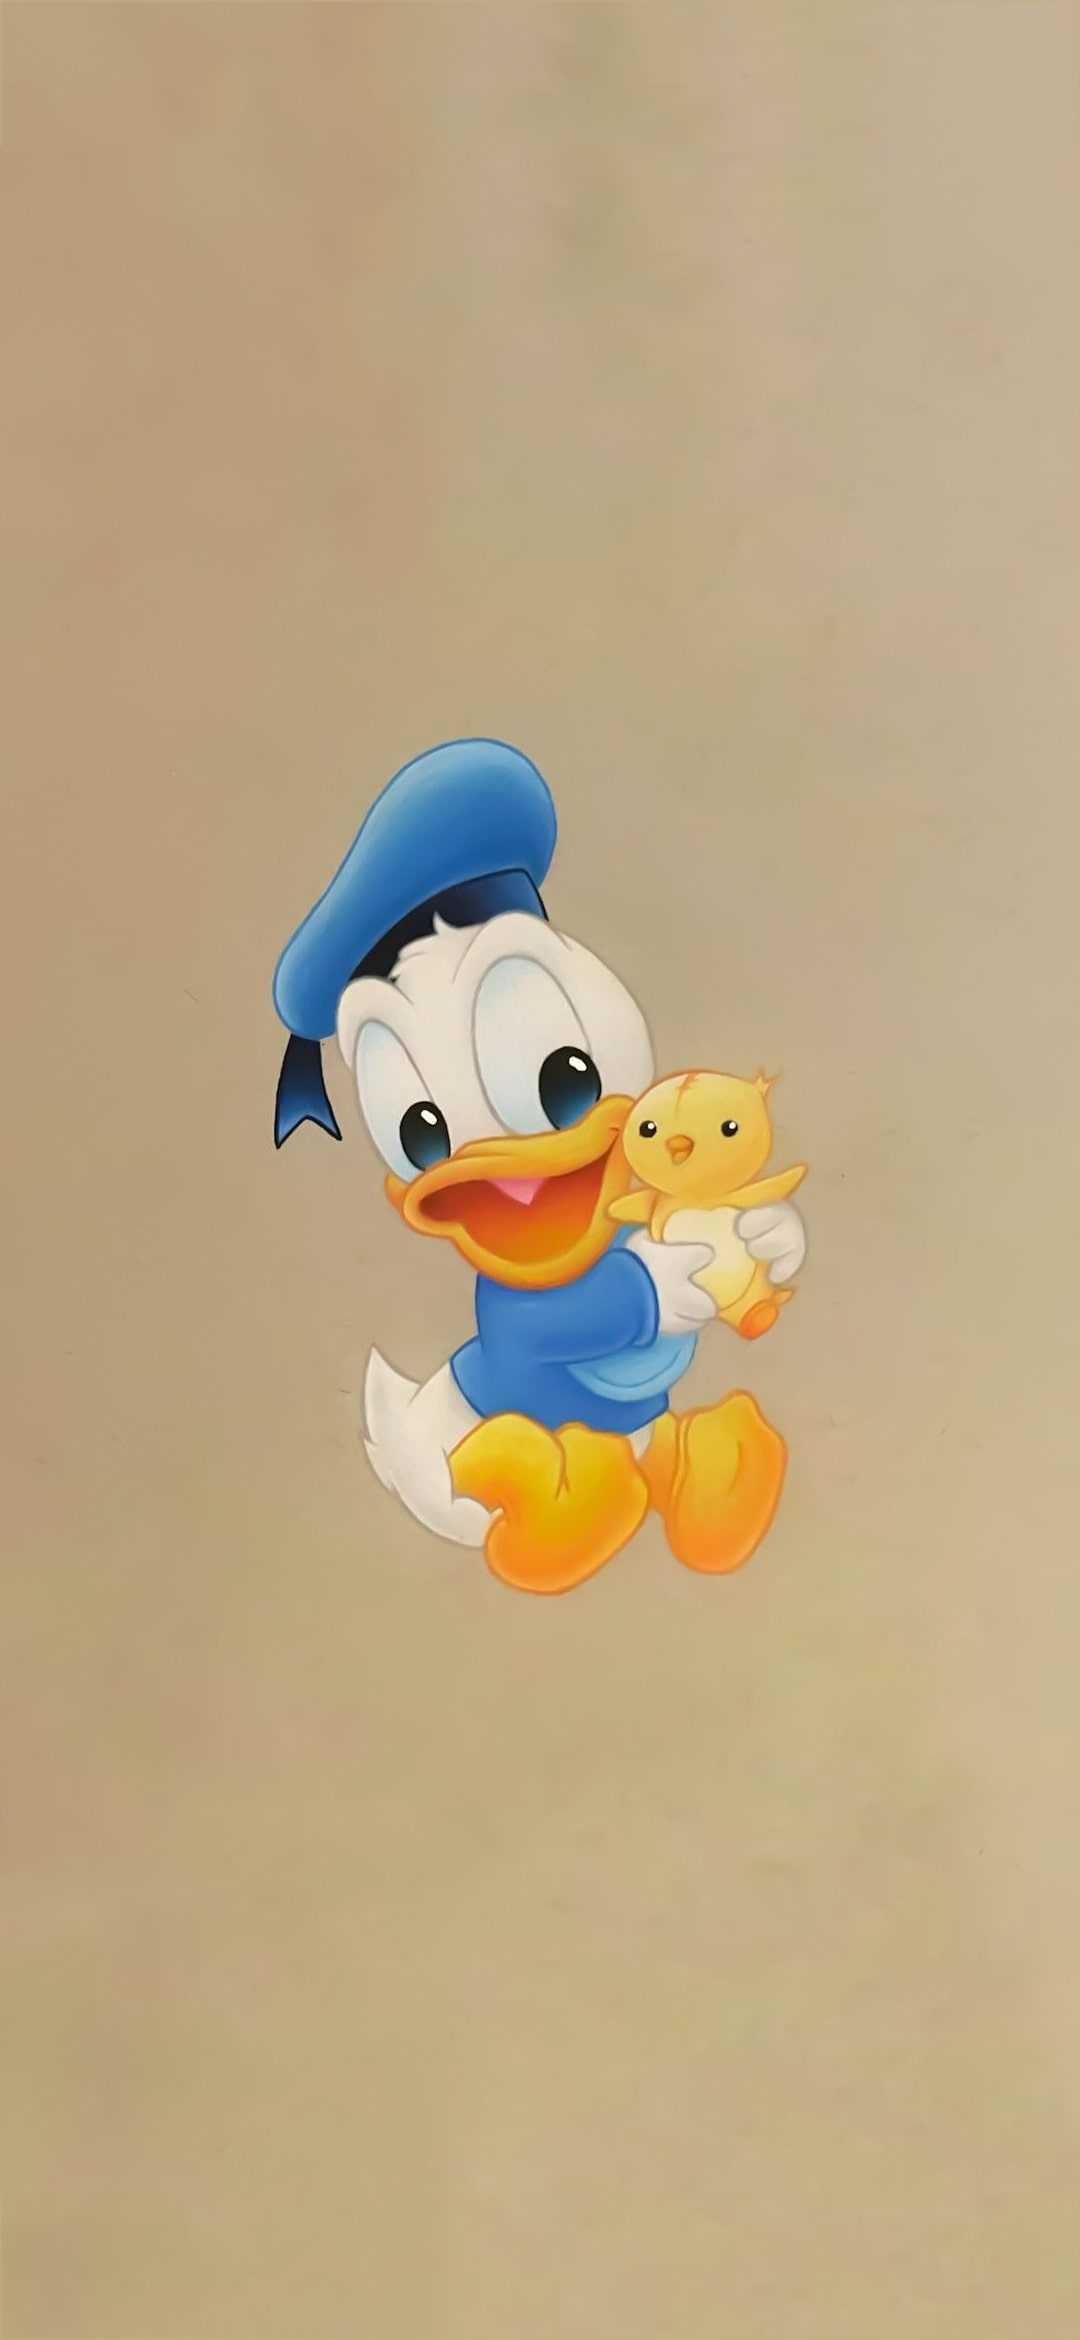 Hình nền vịt Donald cute đẹp mắt nhất